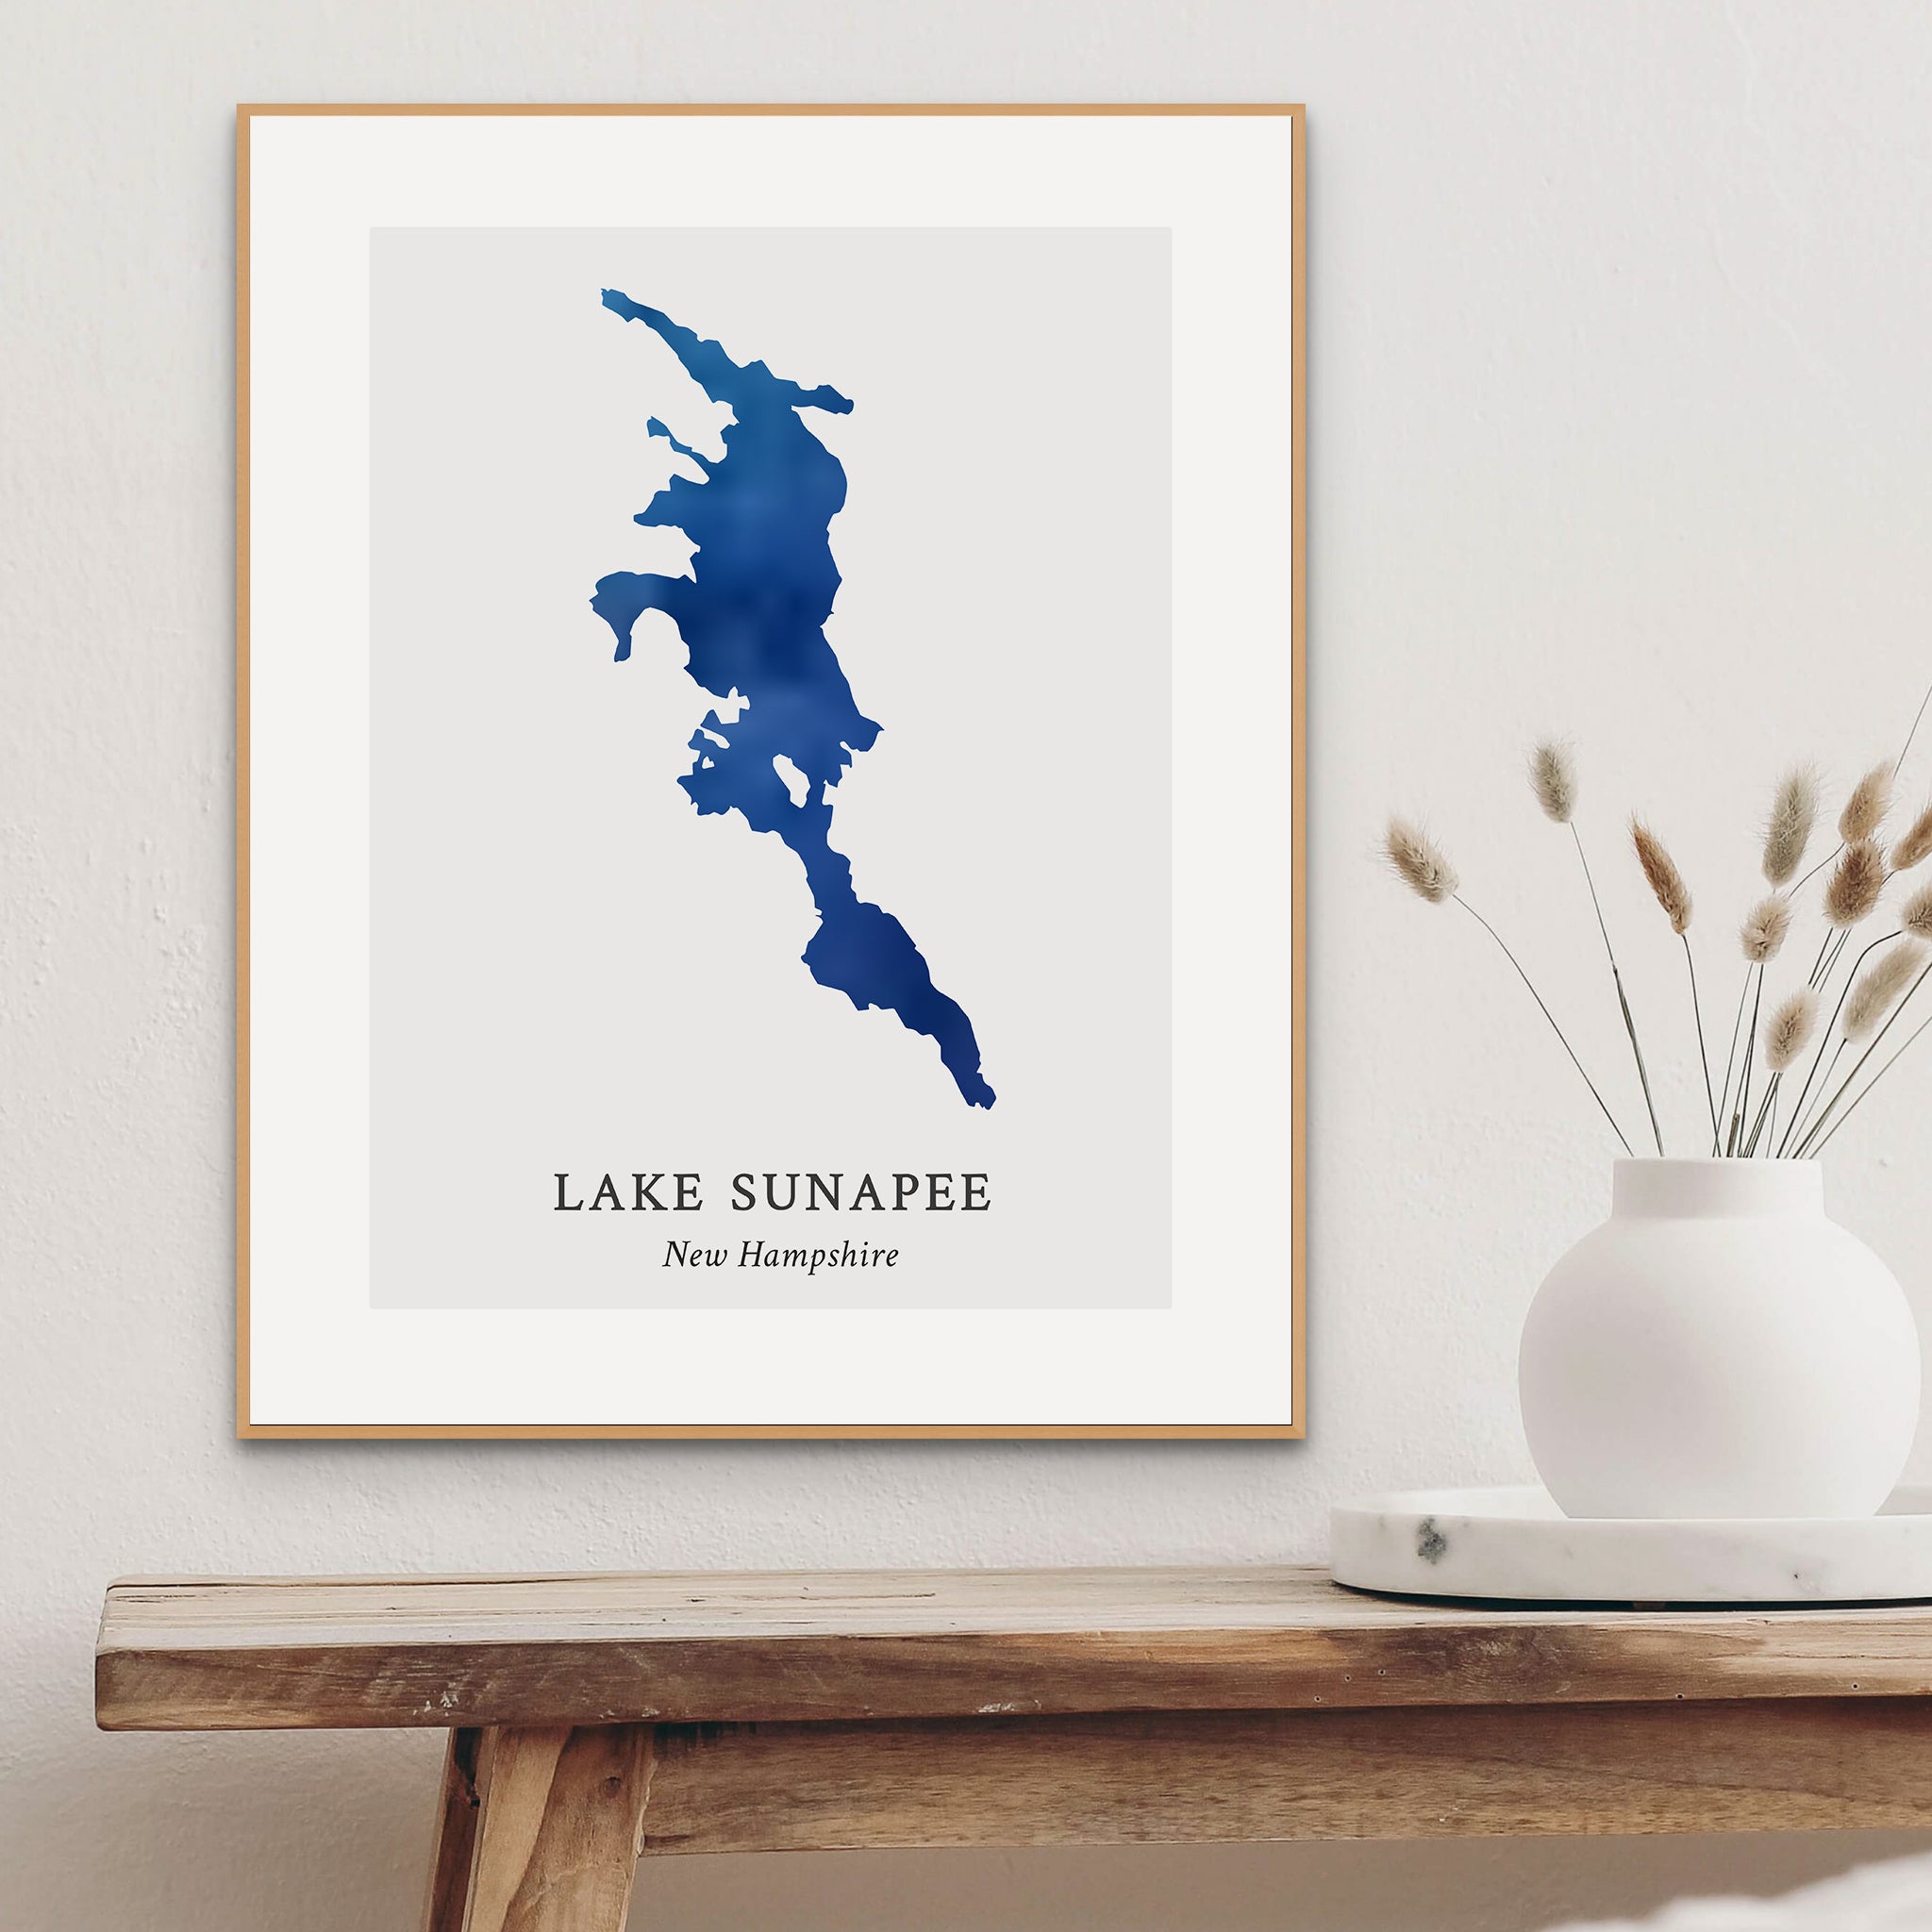 New Hampshire - Lake Sunapee